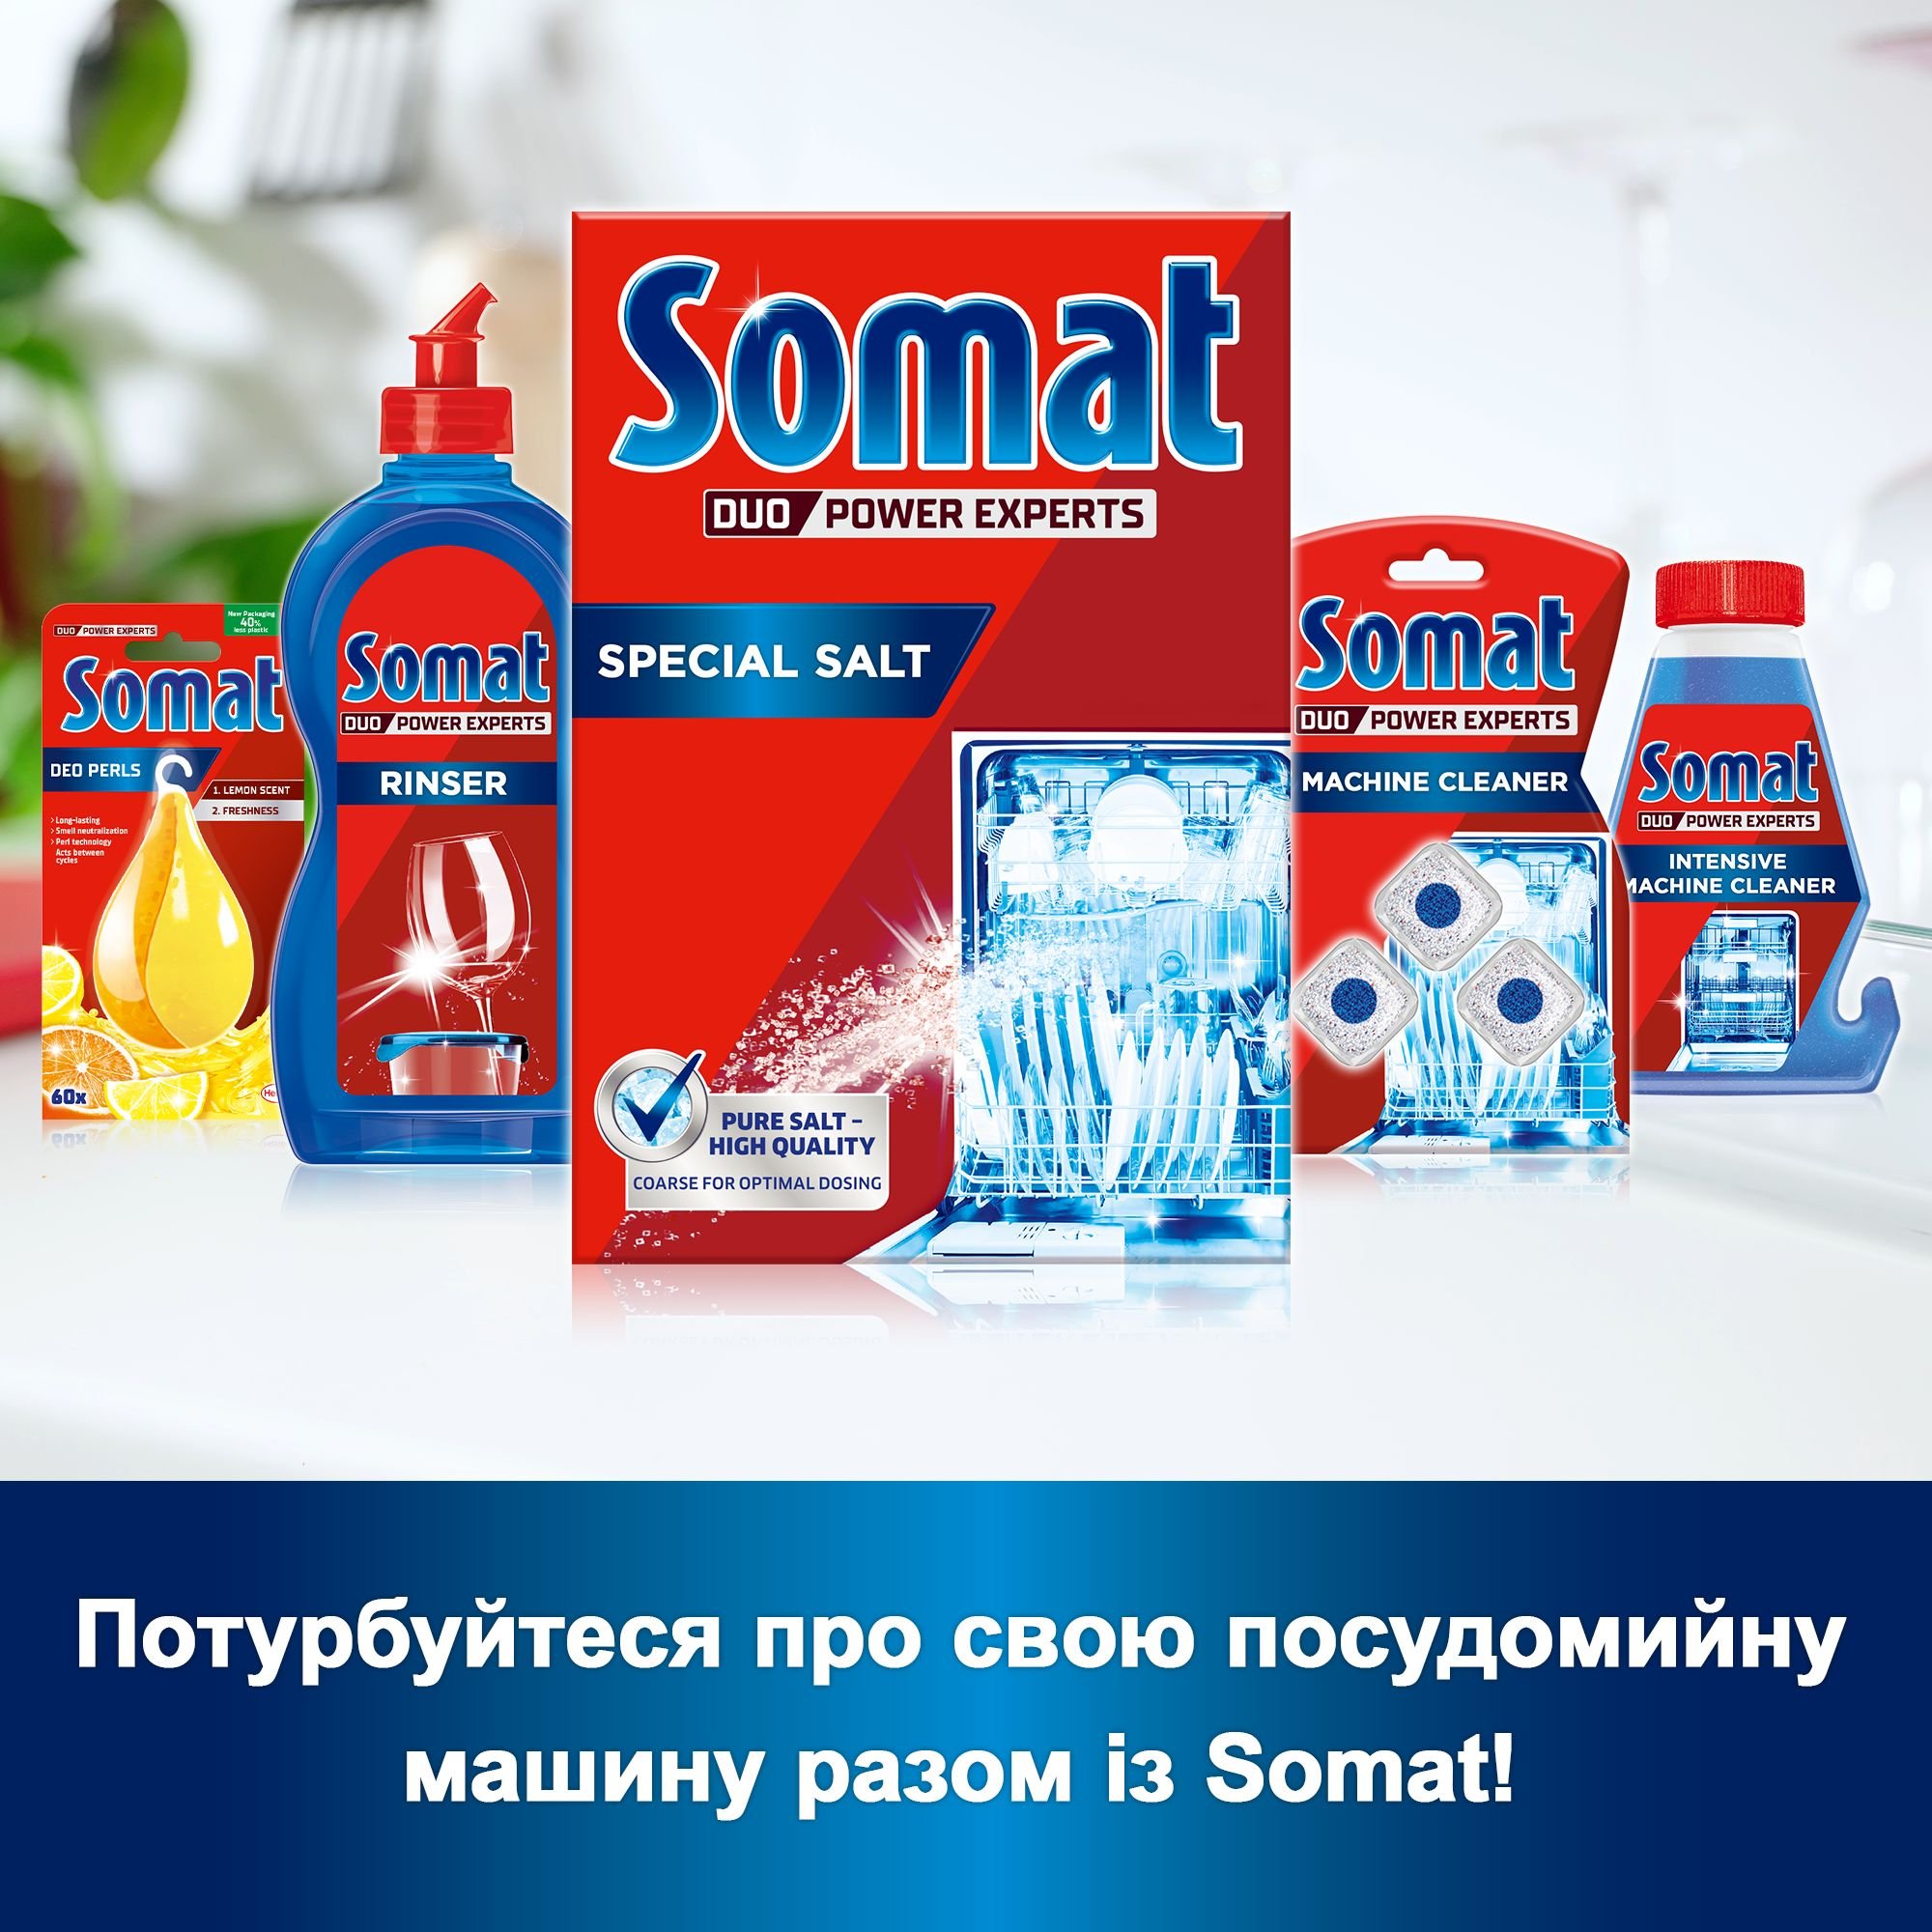 Соль для посудомоечных машин Somat Тройное действие 1.5 кг - фото 6